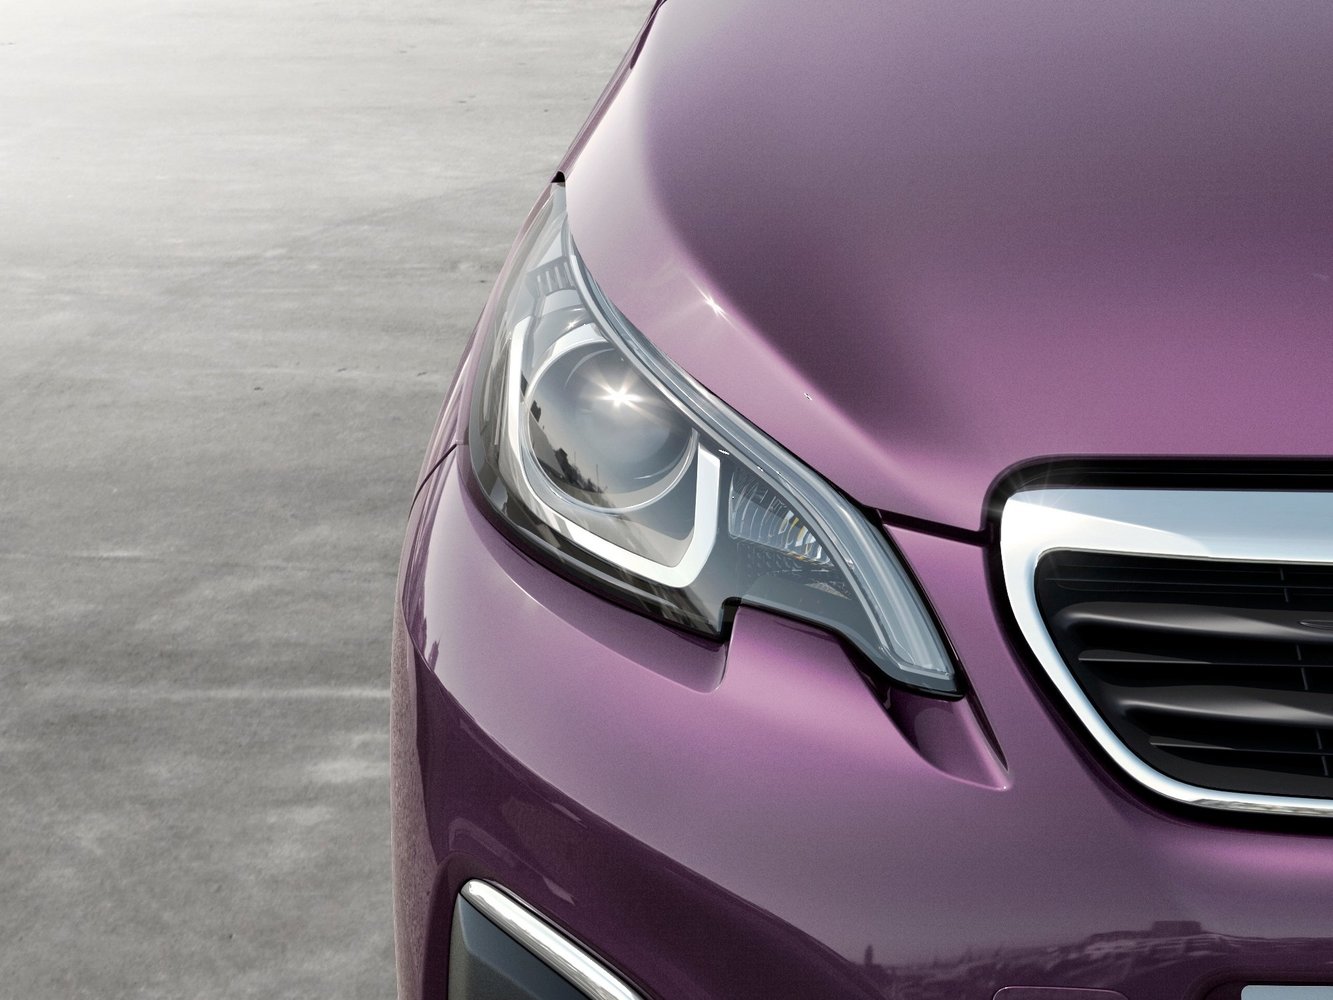 хэтчбек 3 дв. Peugeot 108 2014 - 2016г выпуска модификация 1.0 AMT (69 л.с.)